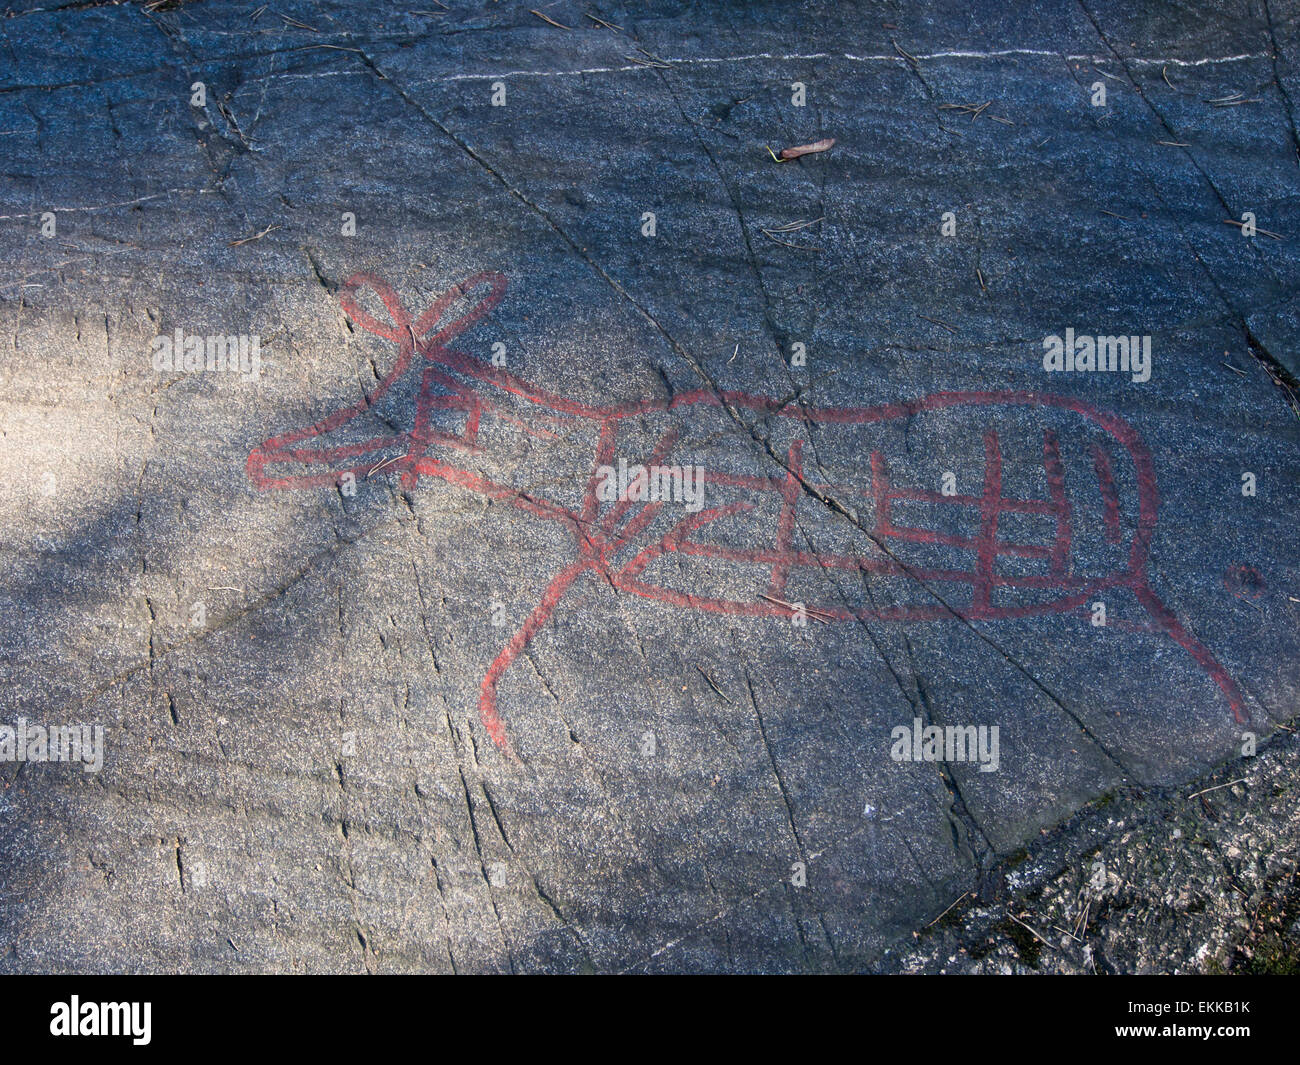 Norwegische Felszeichnungen oder Felsgravuren, verstärkt mit roter Farbe, Elch Figur, Oslo Norwegen Stockfoto